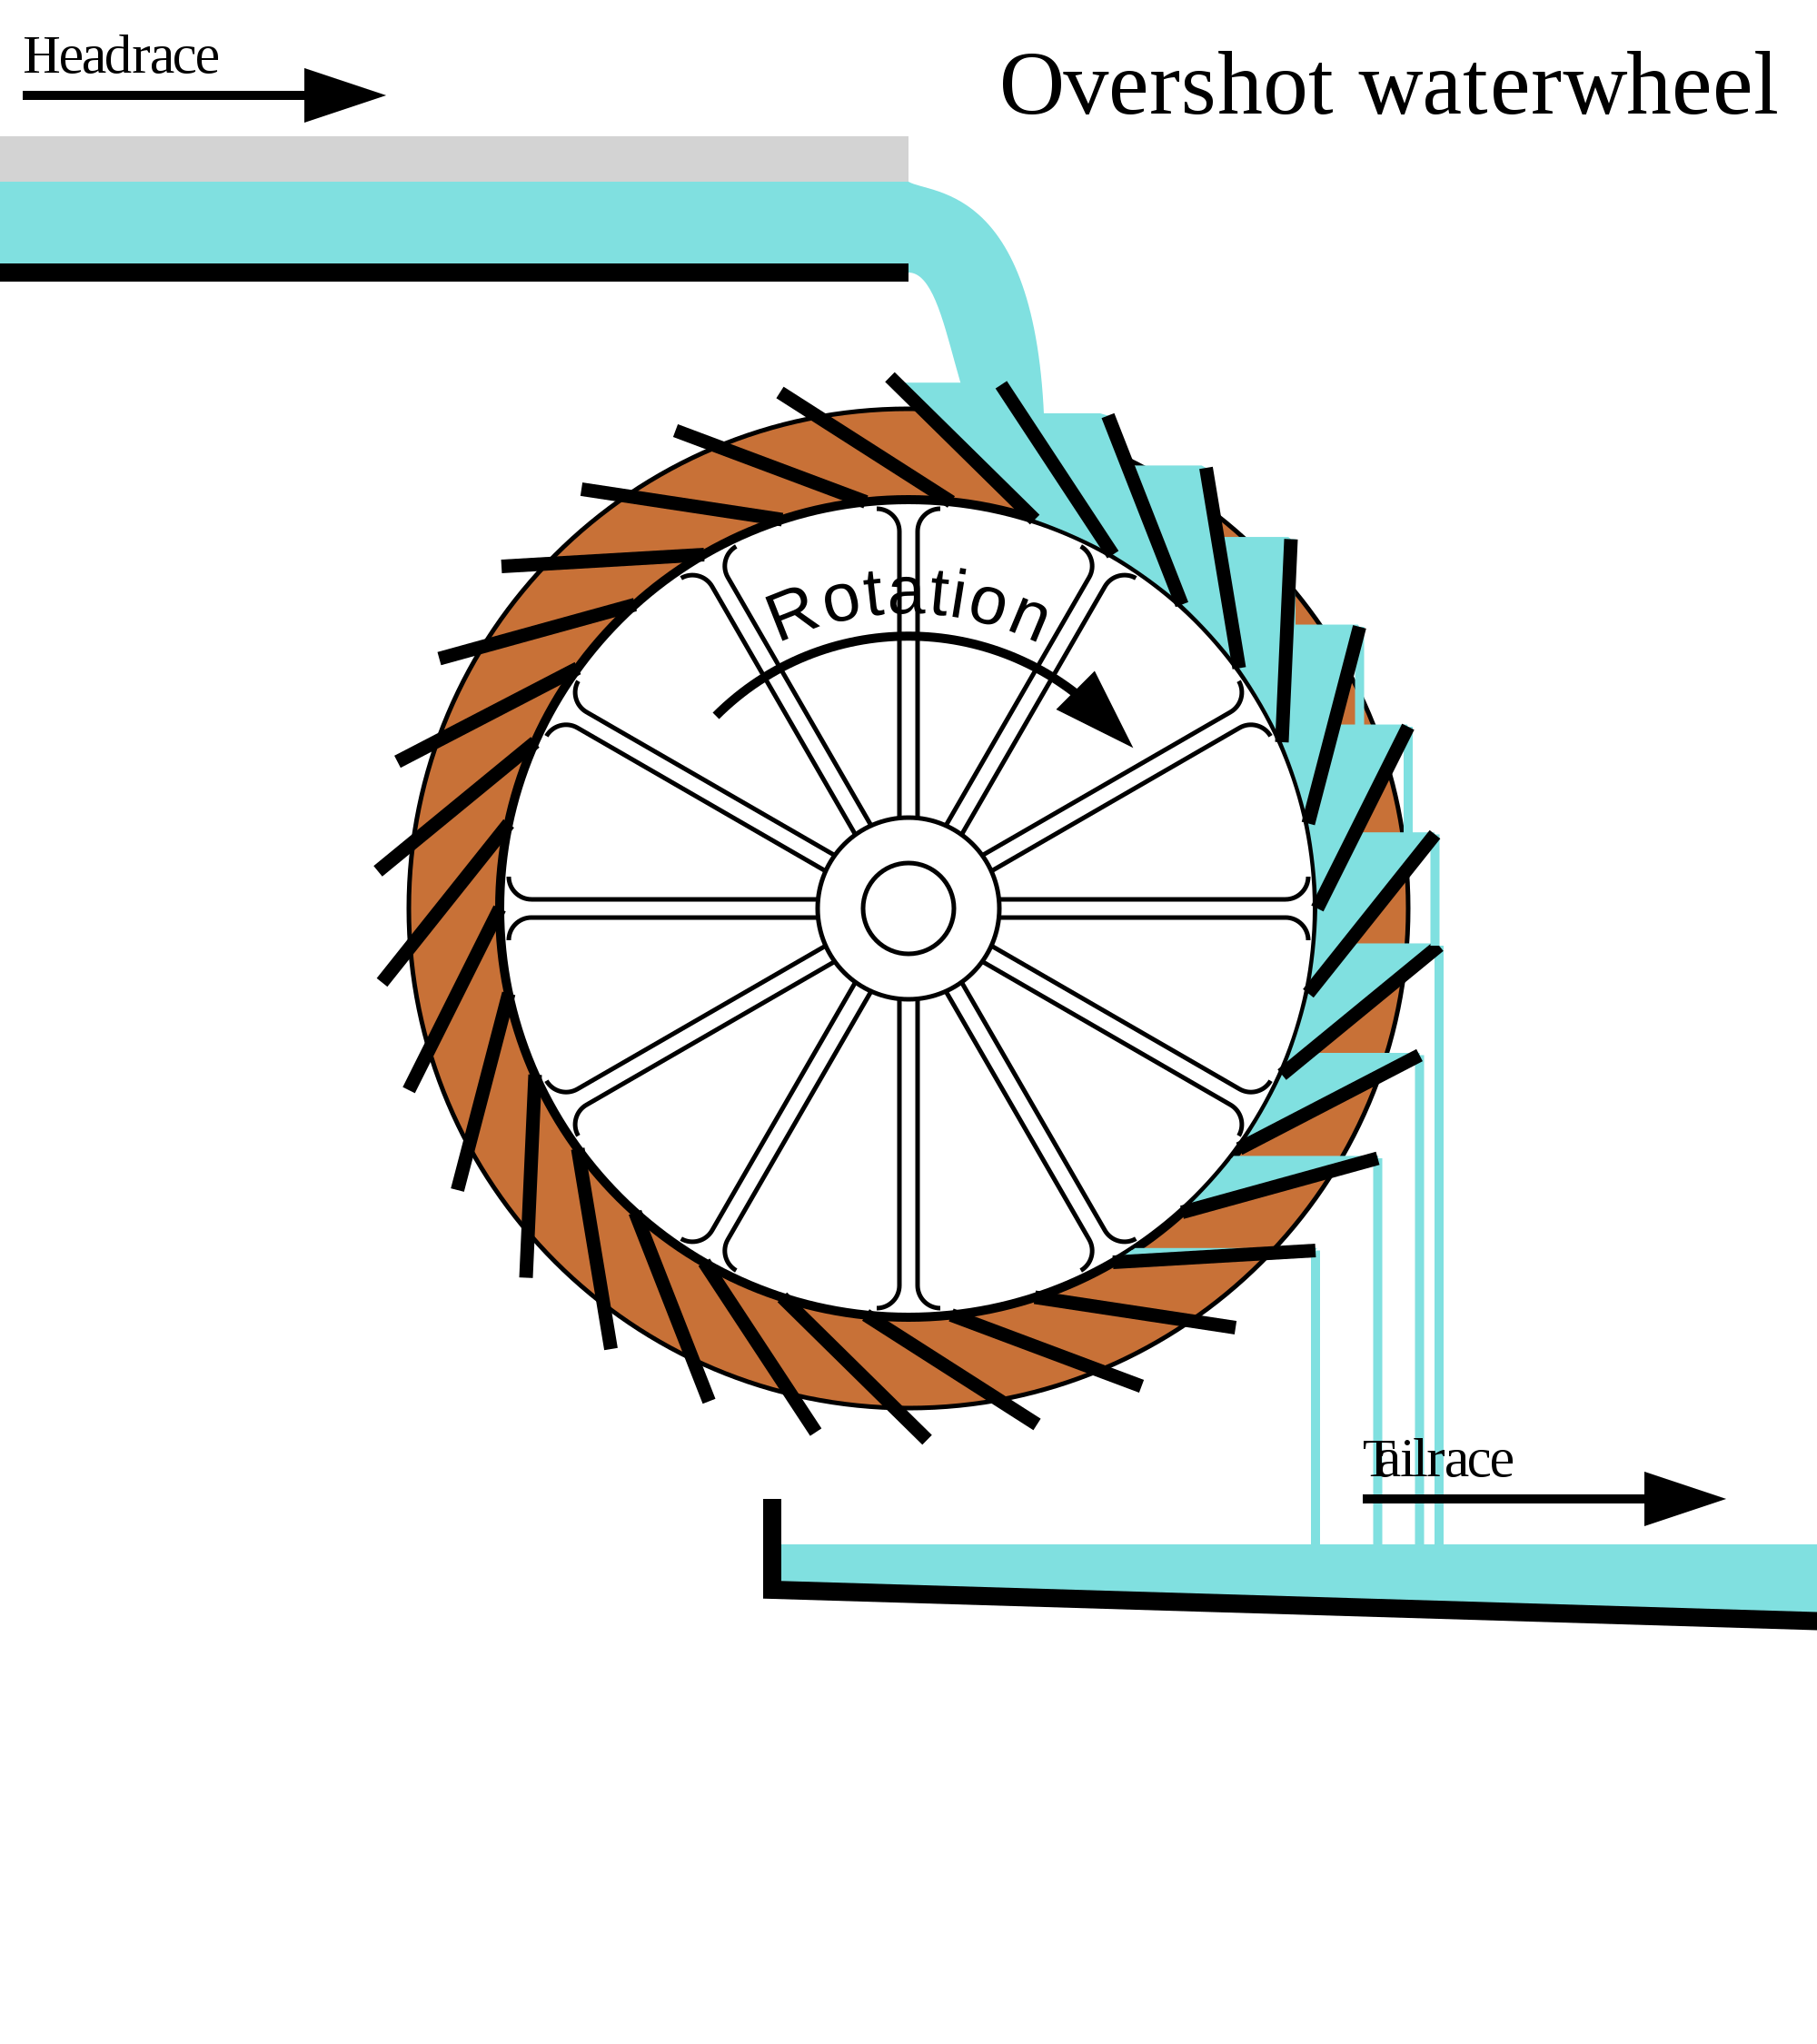 Water wheel - Wikipedia